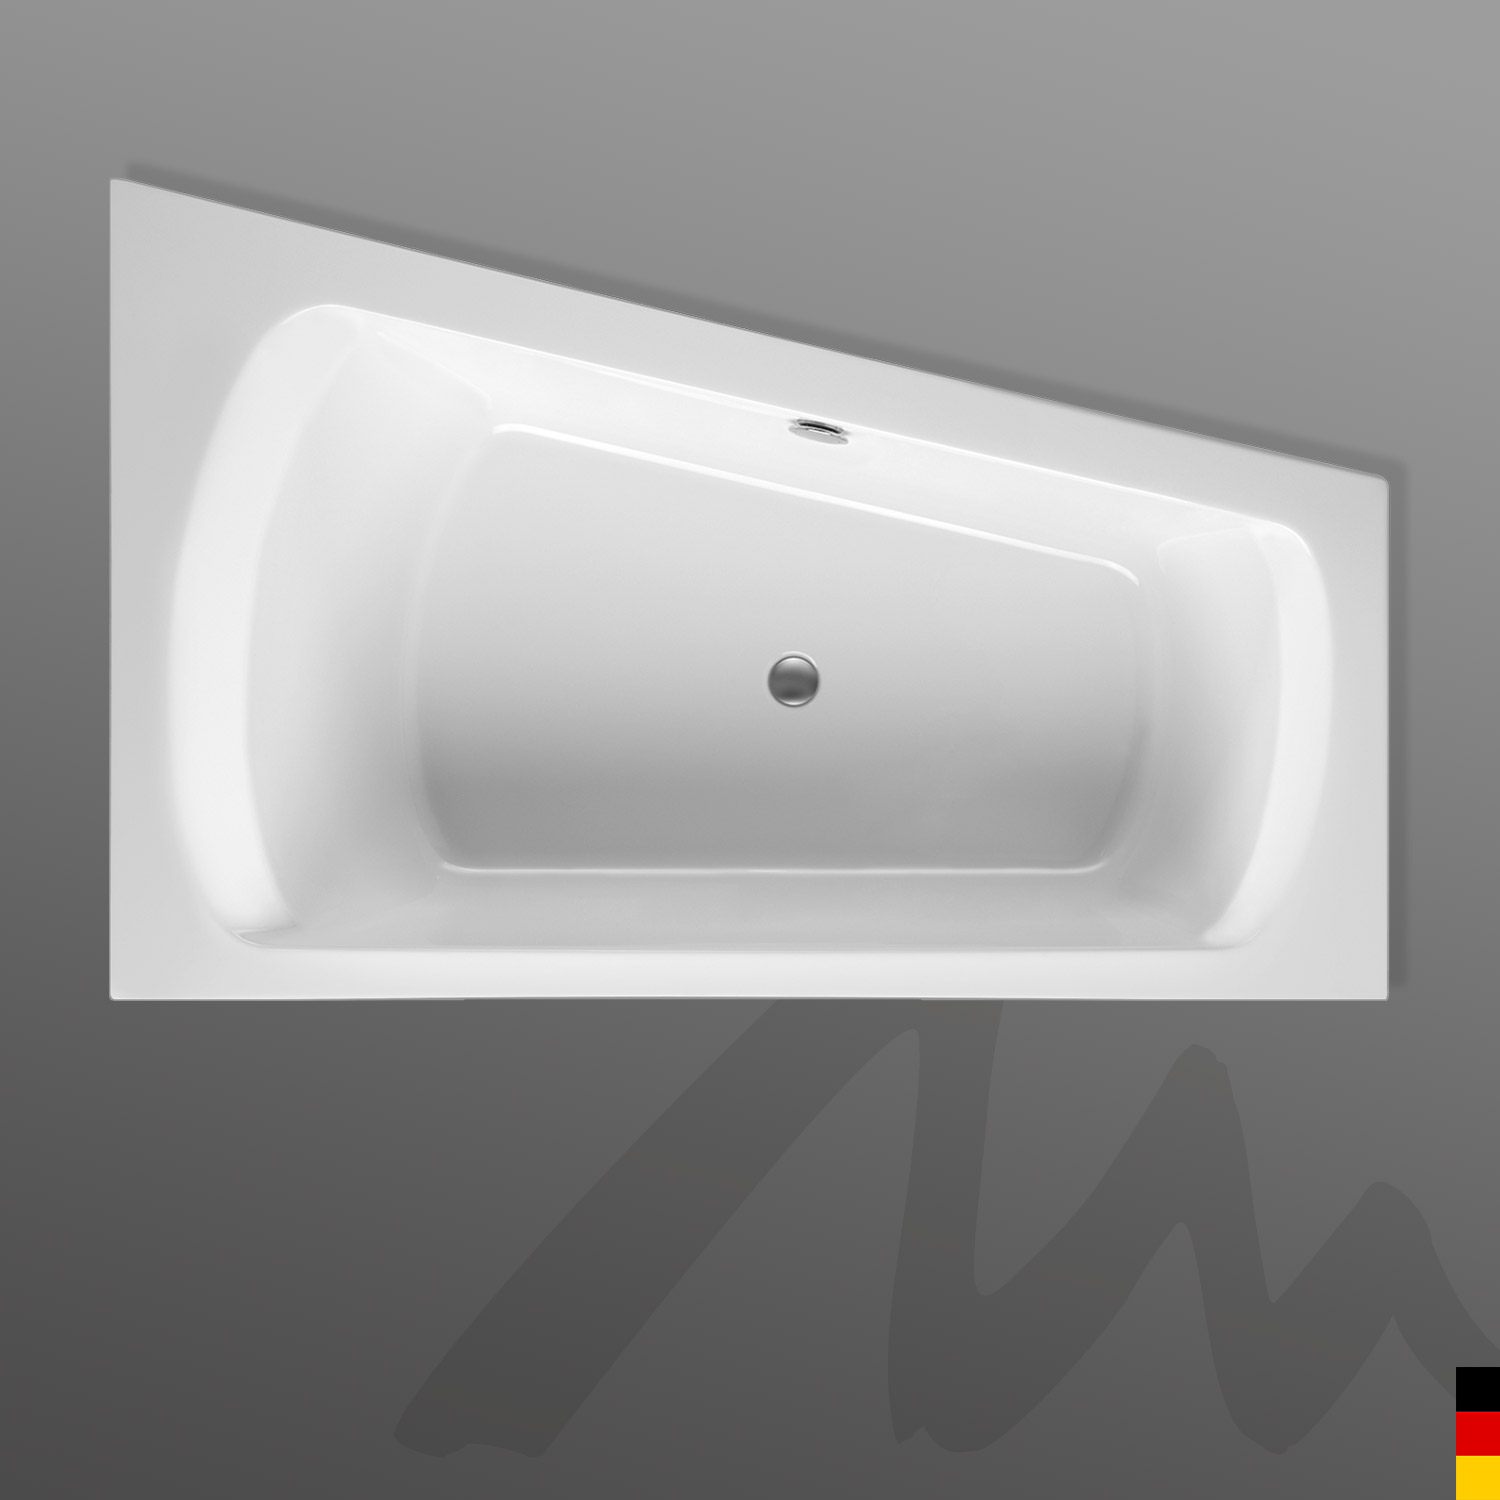 Mauersberger Badewanne Eckwanne Senecio 180/115 Ausführung links  180x115/75x47  Farbe:weiß